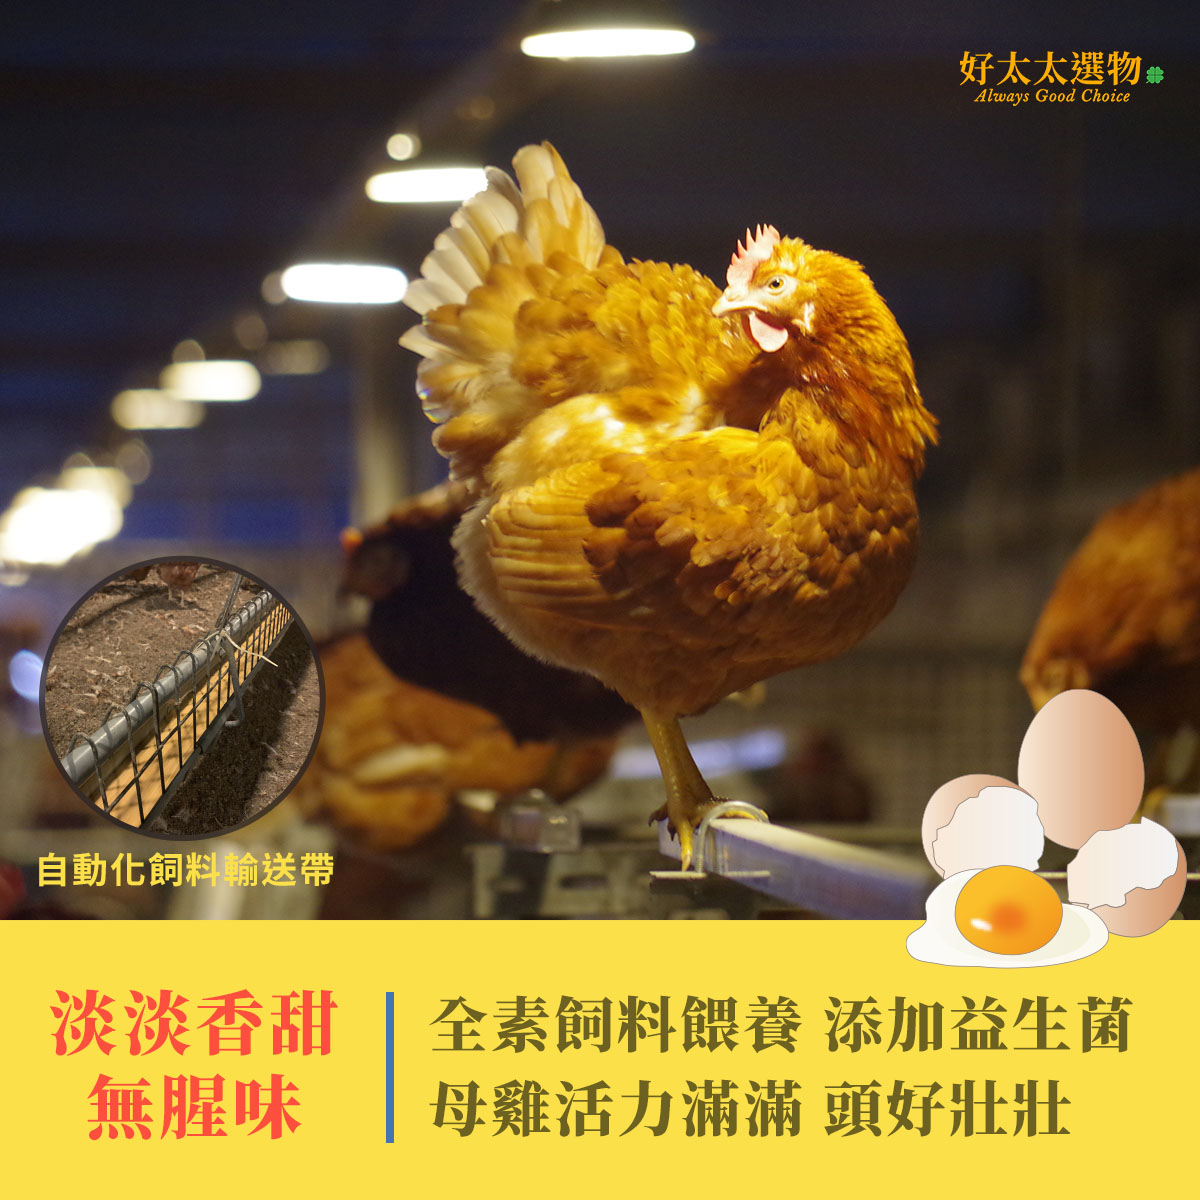 全素飼料餵養添加益生菌 雞隻健康 雞蛋淡淡甜味無腥味